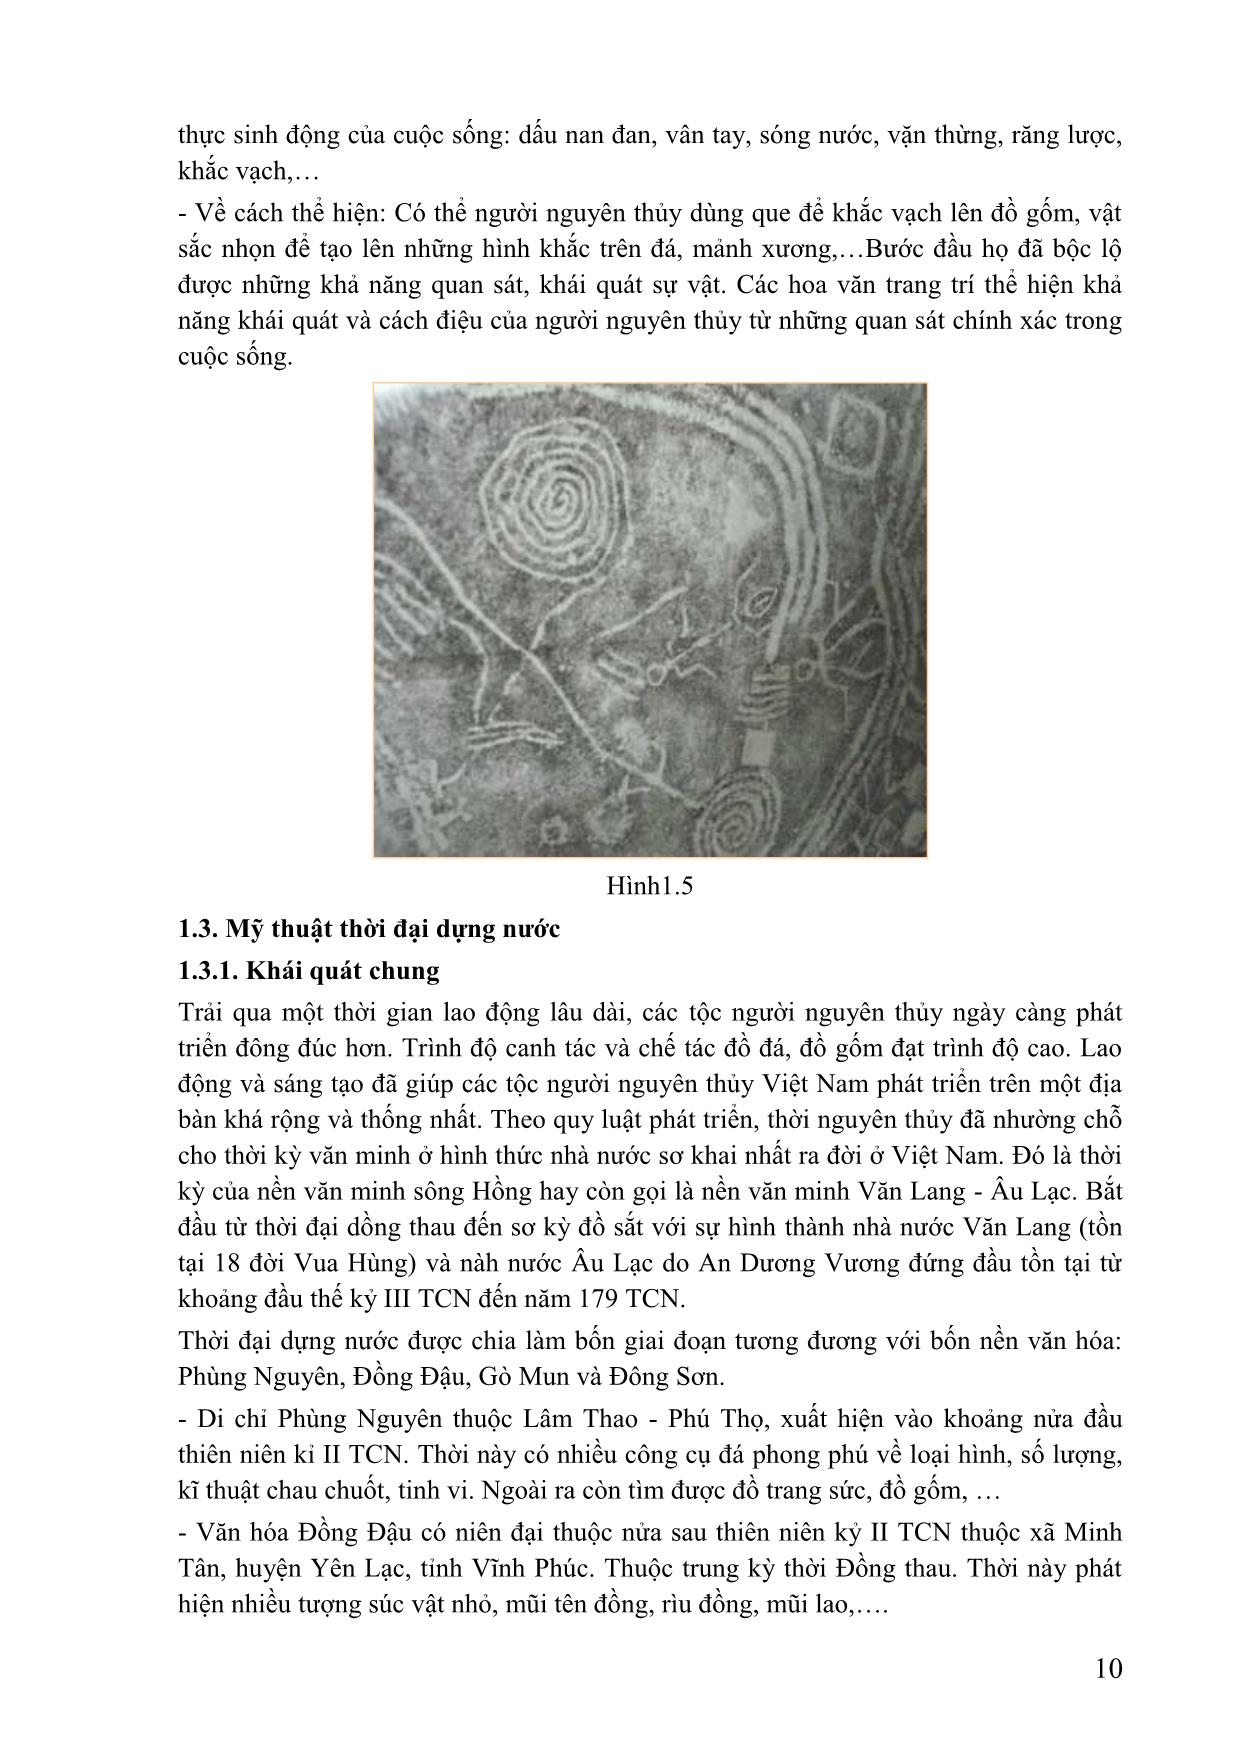 Giáo trình Hội họa - Lịch sử mỹ thuật Việt Nam trang 10